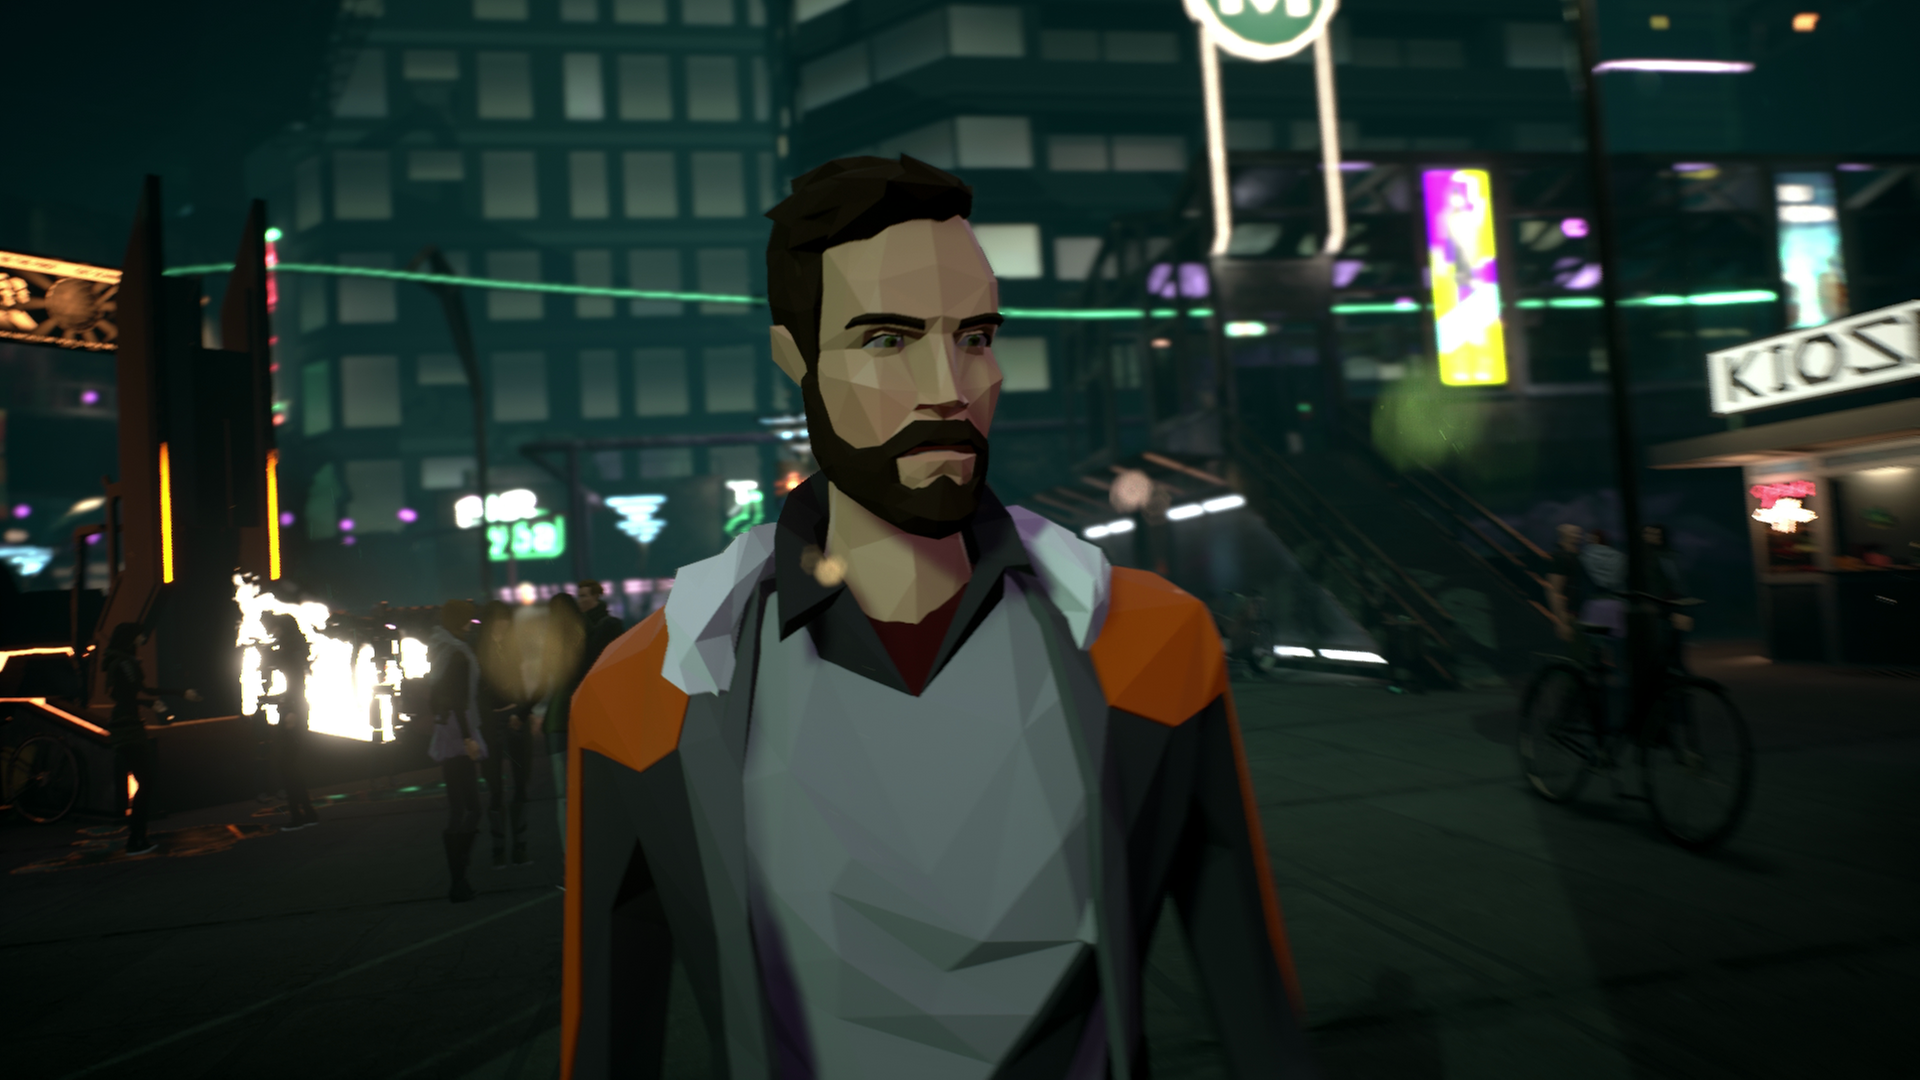 Eine Szene aus dem Spiel "State of Mind" - der Protagonist geht durch eine dunkle und dystopische Stadtszenerie